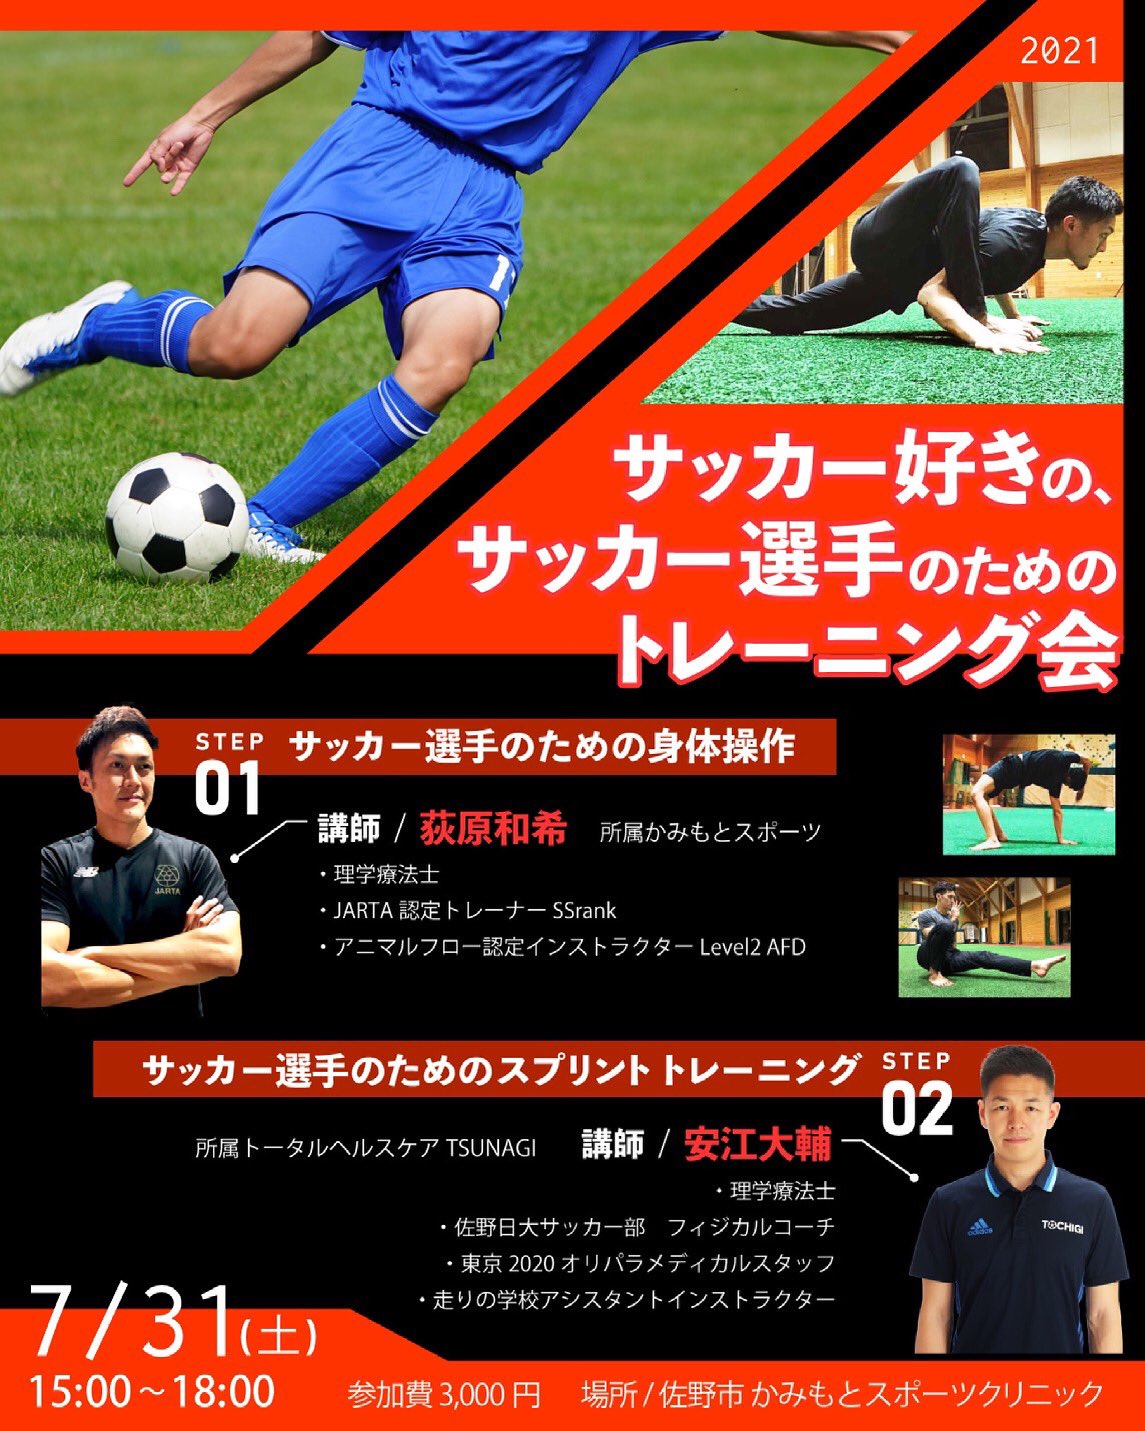 安江大輔 Daisukeyasue サッカー好きの サッカー選手のための トレーニング会を開催します サッカー選手のための身体操作 サッカー選手のためのスプリント 身体操作を得意とする荻原 和希さんとコラボさせて頂きます ありそうでなかった内容です